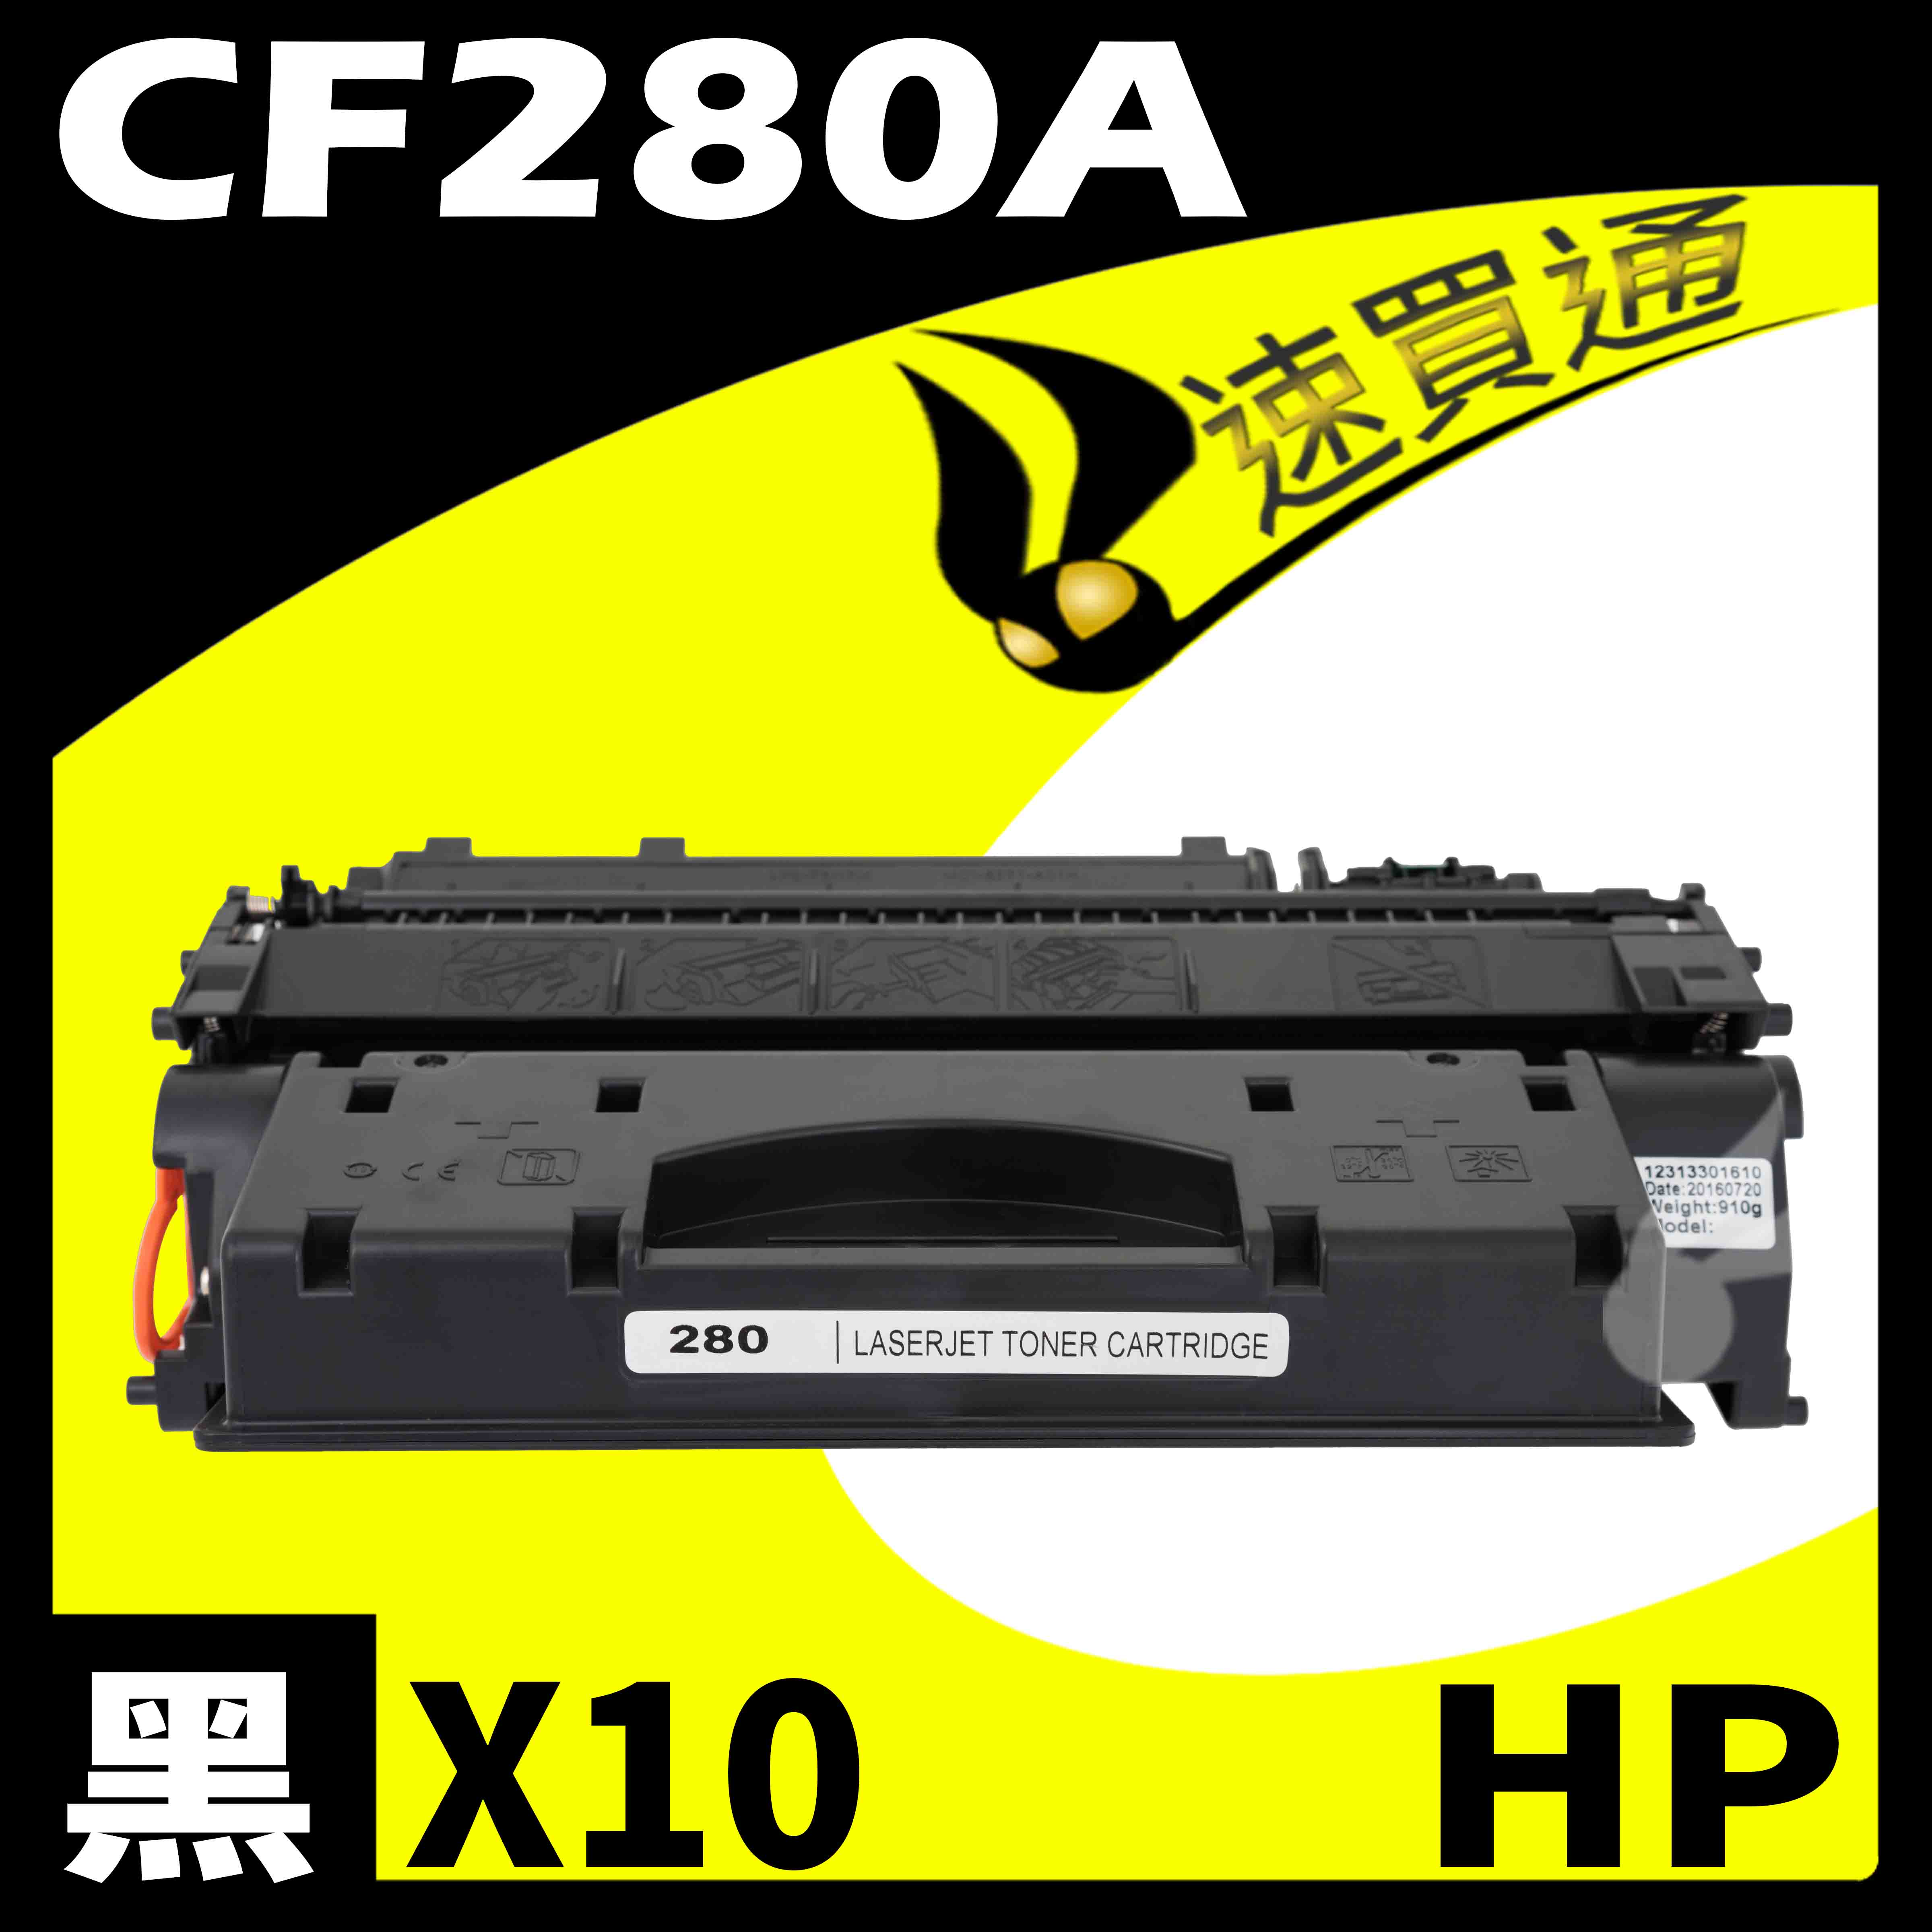 【速買通】超值10件組 HP CF280A 相容碳粉匣